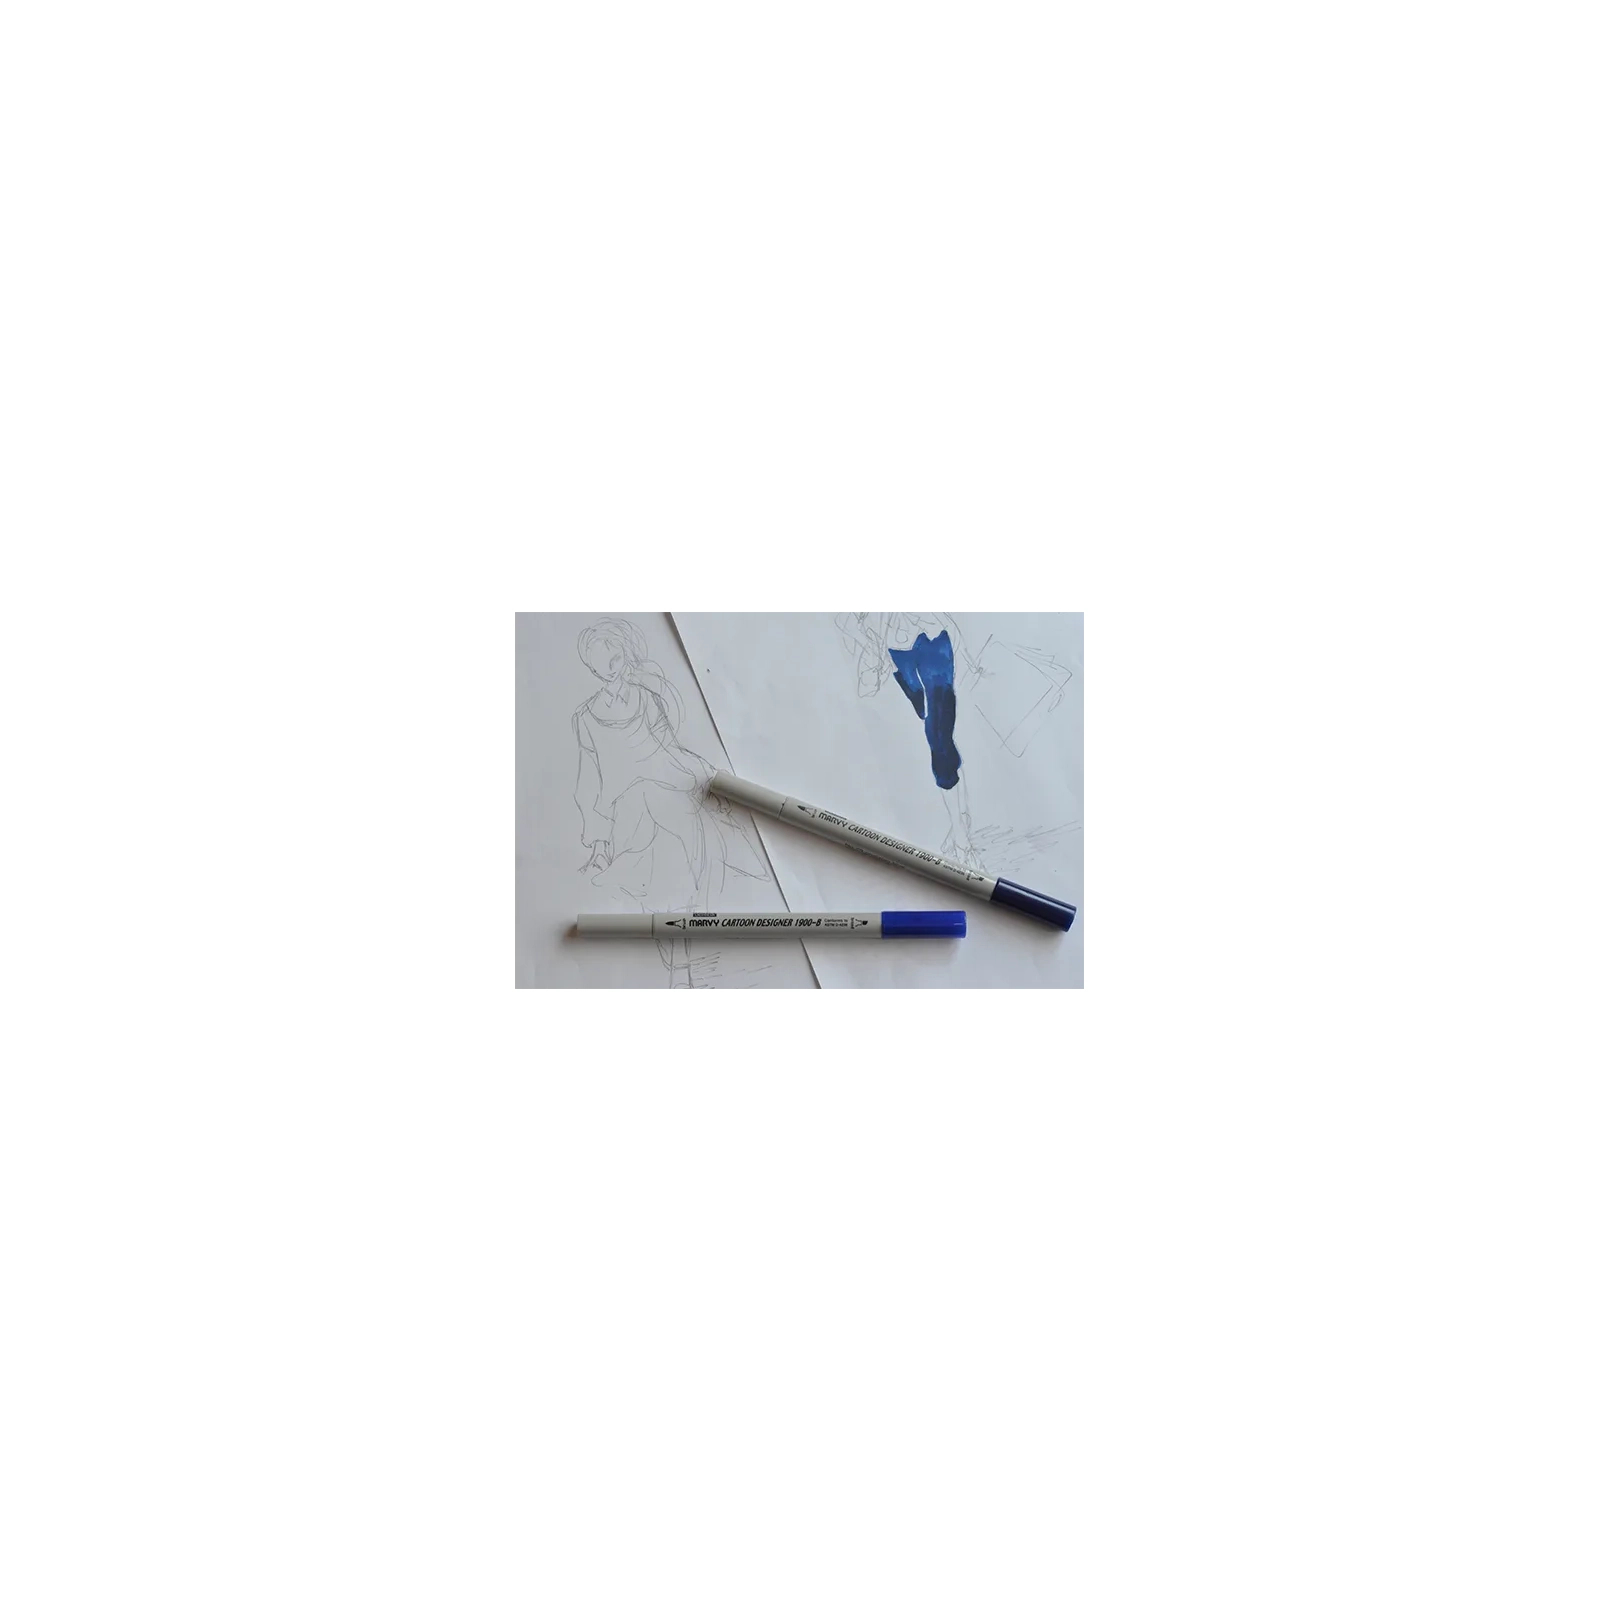 Художественный маркер Marvy двусторонний 1900B-S Бежевый (752481291247) изображение 4